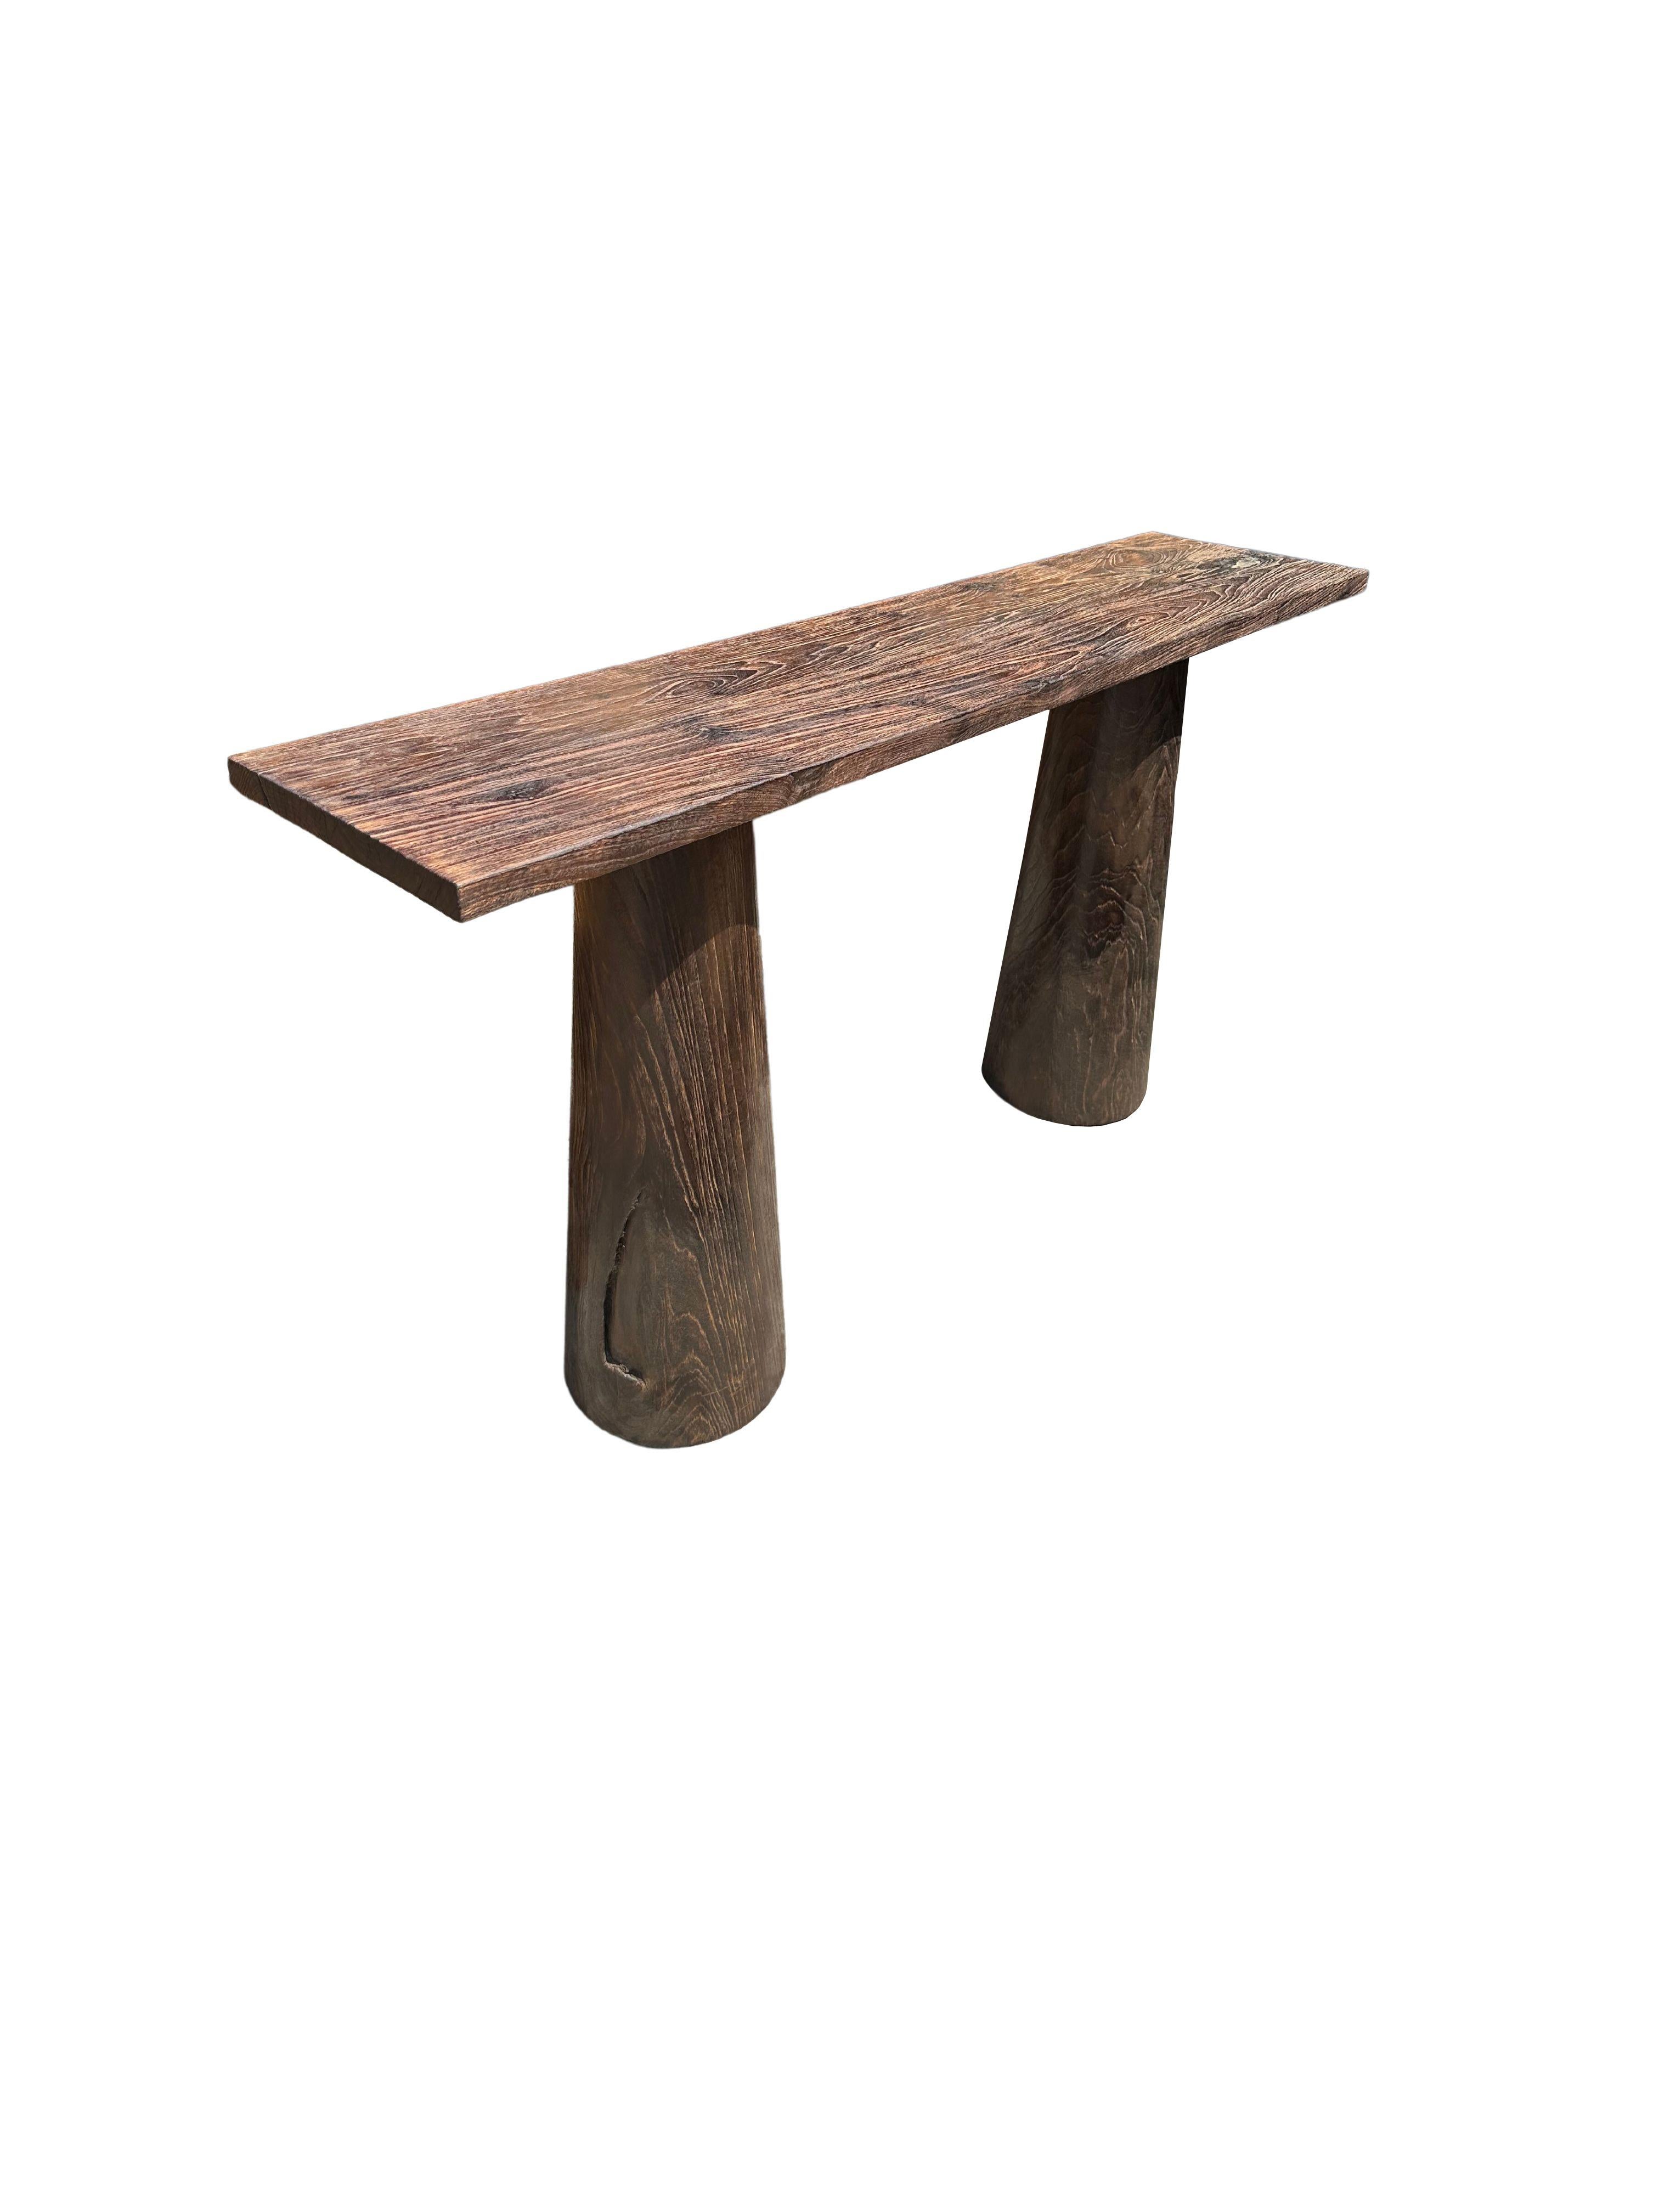 Console sculpturale en bois de teck massif. Le plateau de la table repose sur deux solides,  jambes. Un objet merveilleusement minimaliste. Les subtiles textures de bois présentes sur toutes les faces ajoutent à son charme. Pour obtenir son pigment